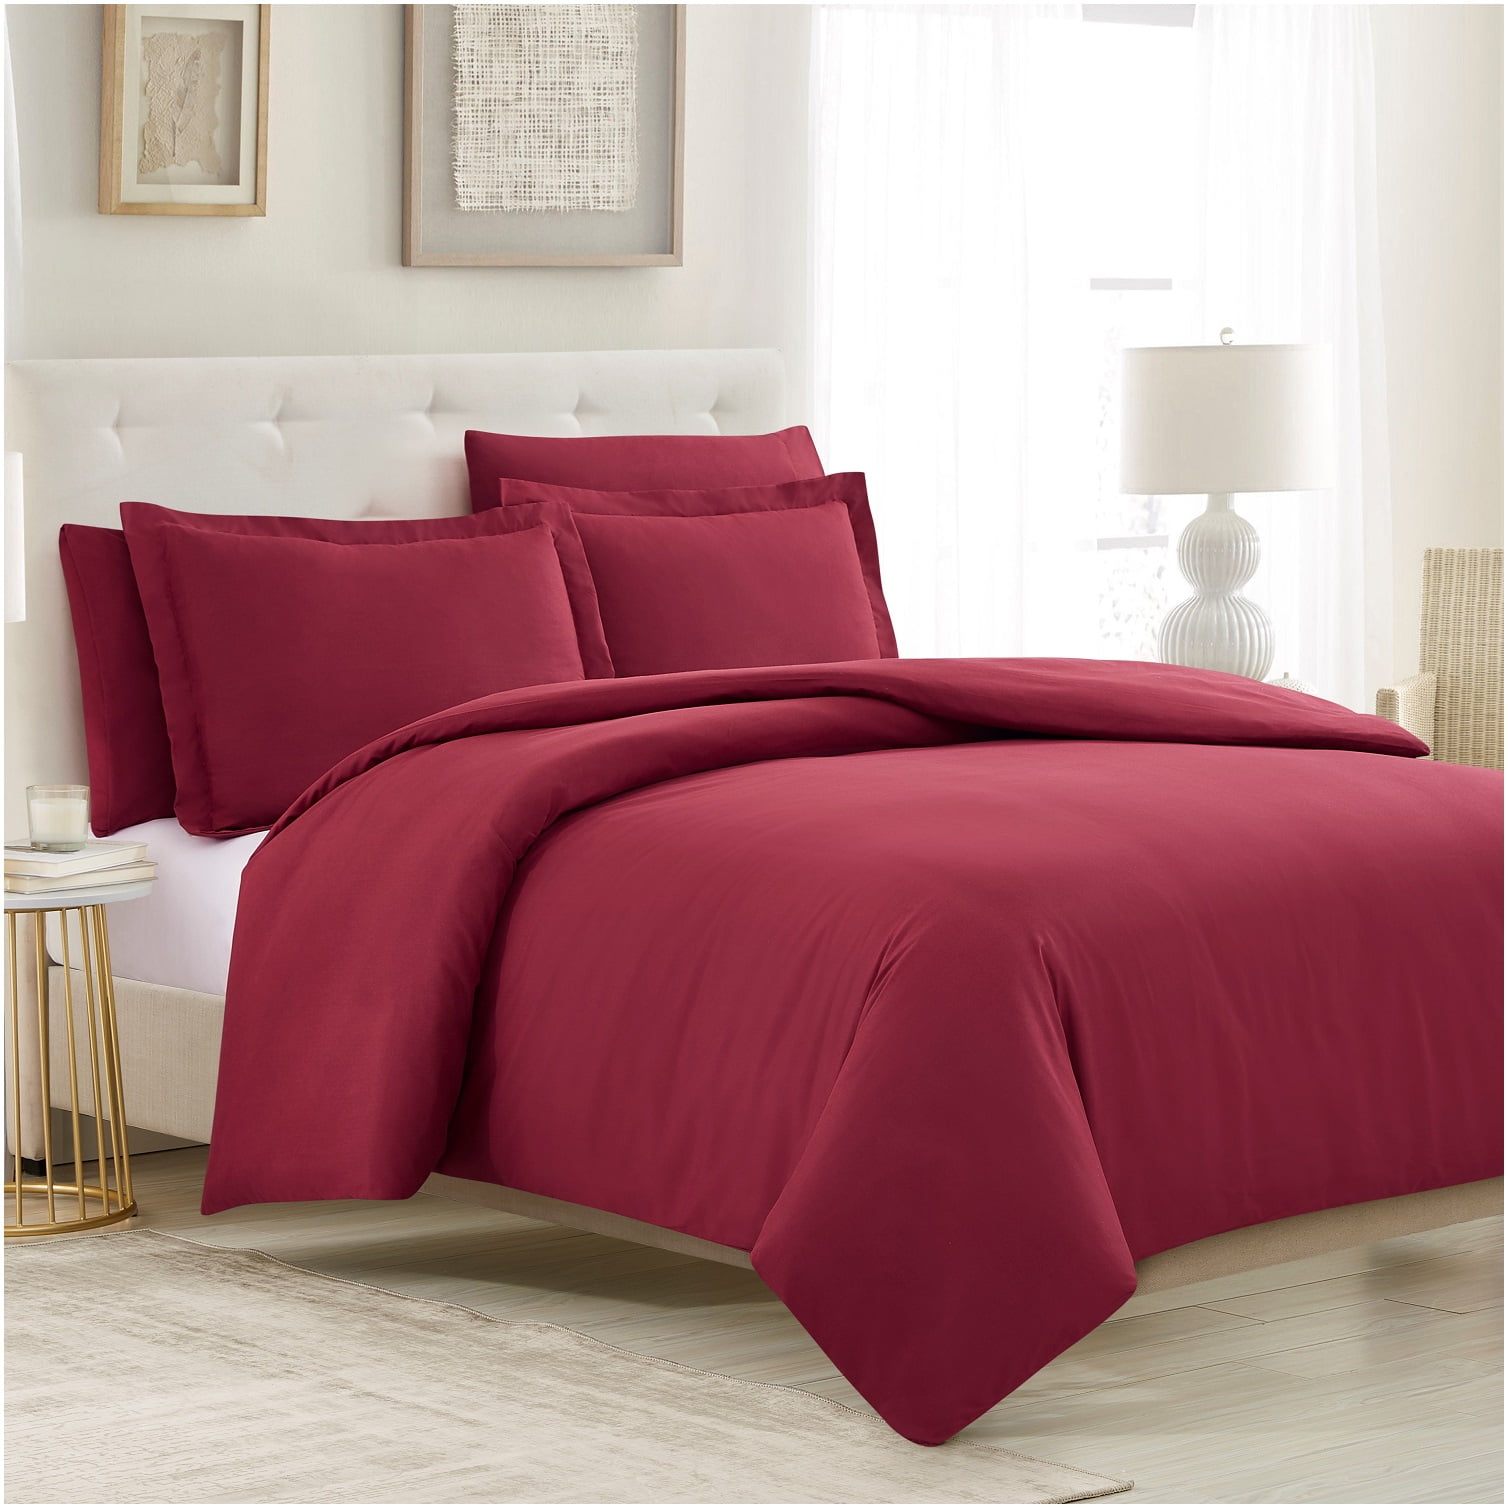 Burgundy Duvet Cover Set Soft Brushed Comforter Cover W/Pillow Sham Full 